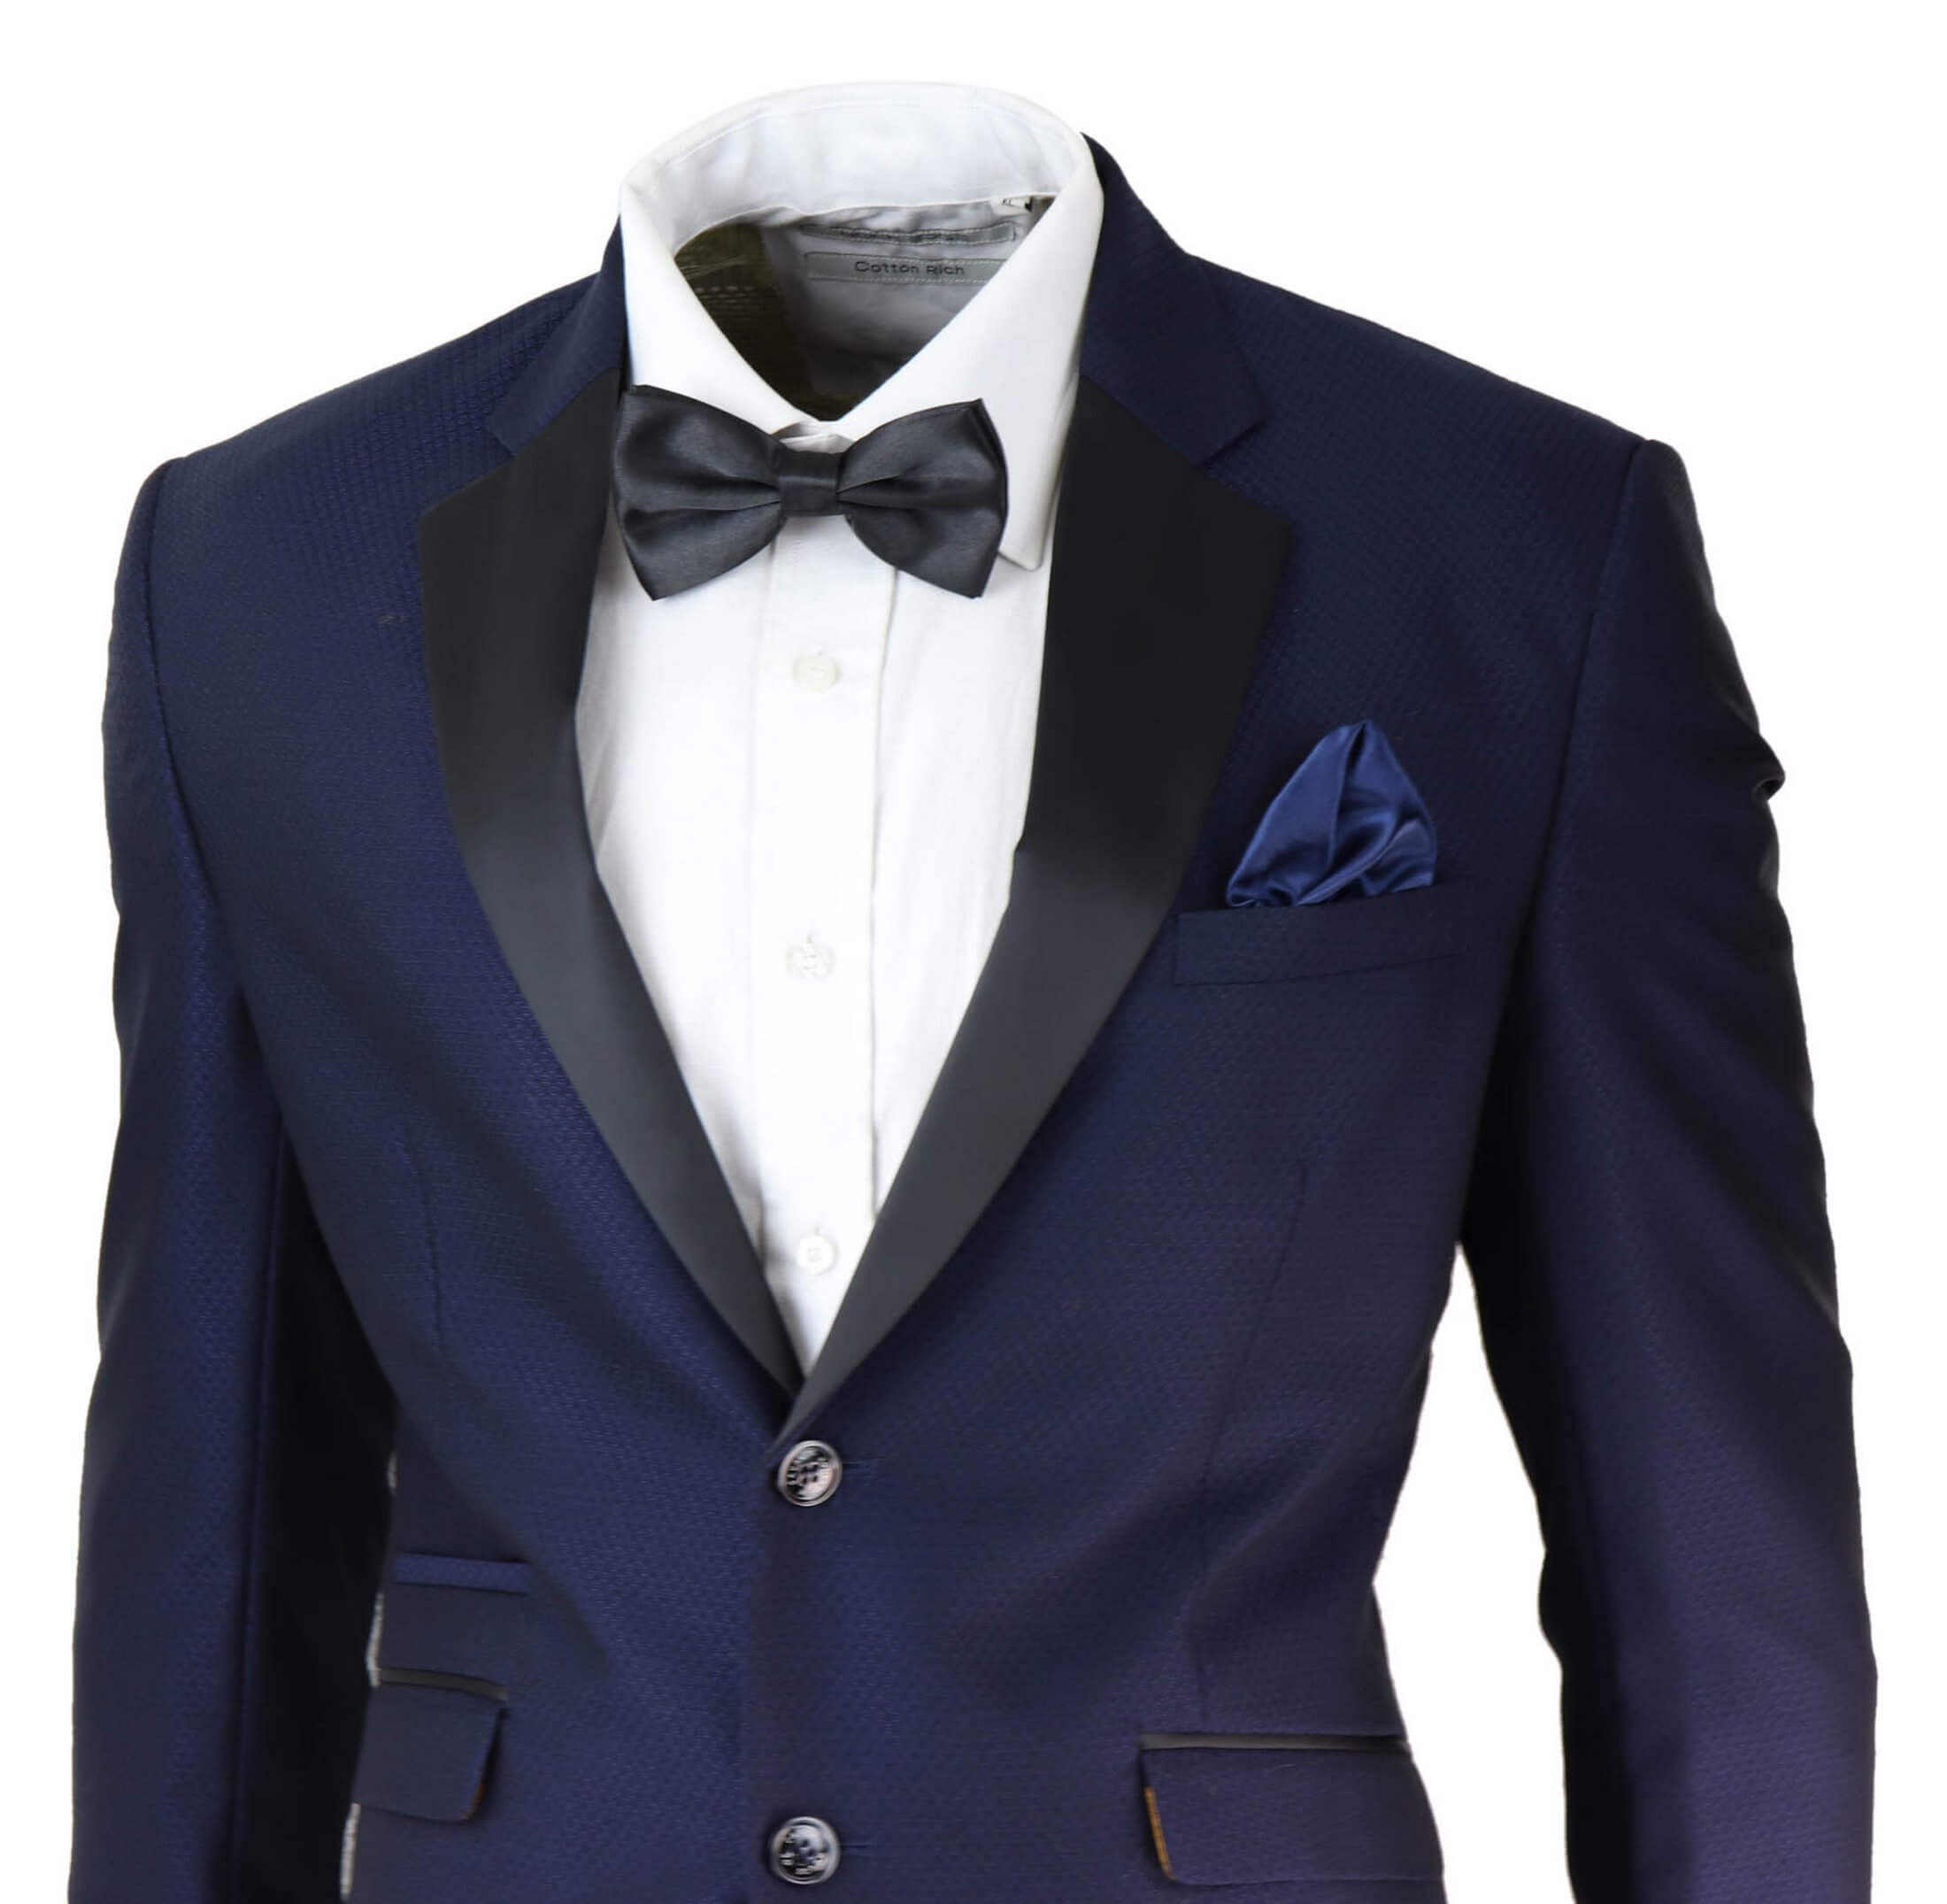 Mens Blue Tuxedo Dinner Suit: Buy Online - Happy Gentleman